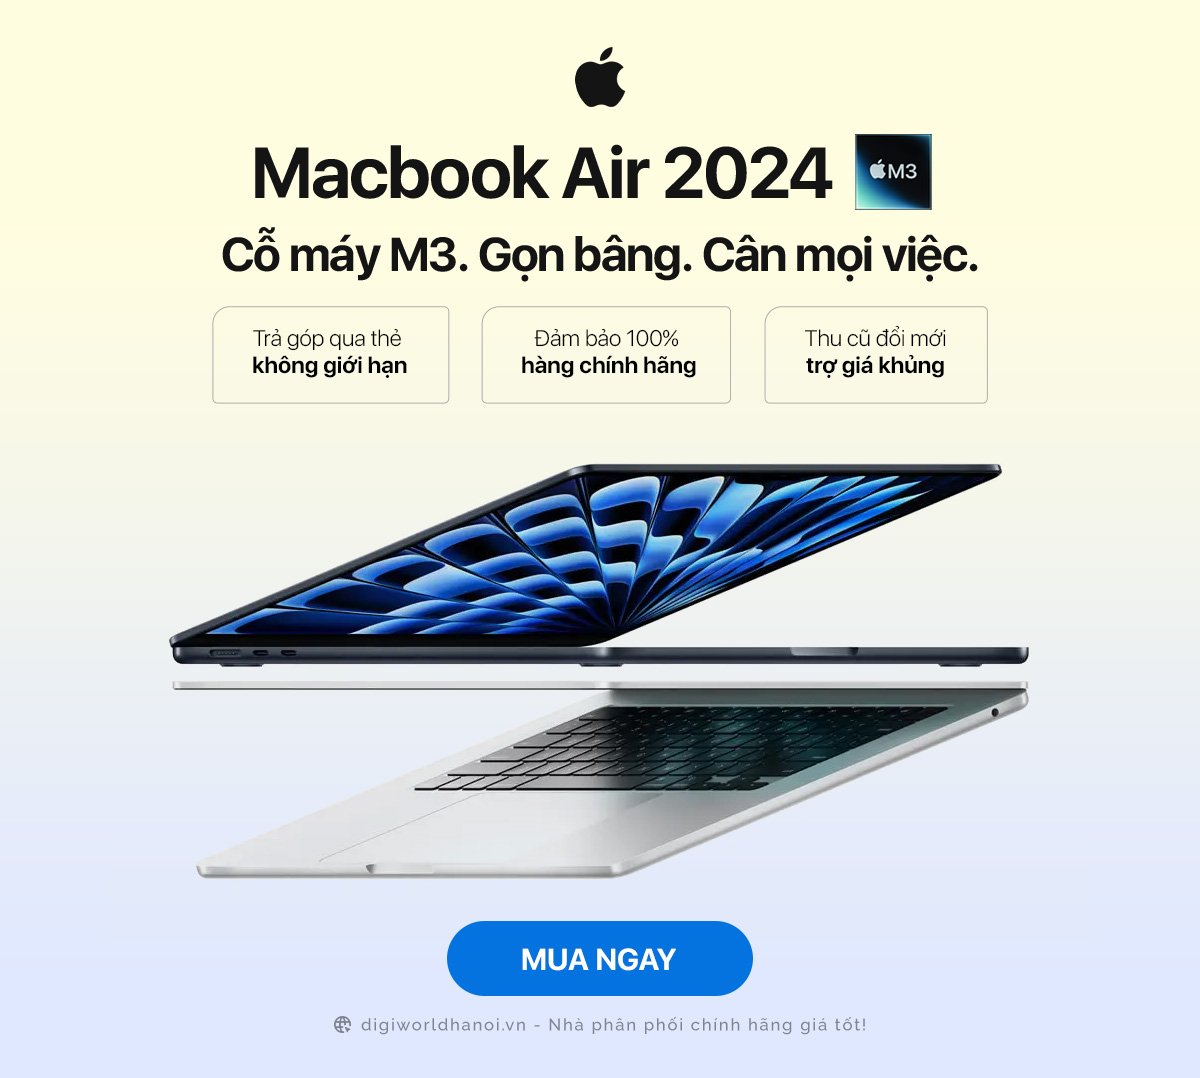 Macbook Air 2024 với chip M3 siêu nhanh đã có hàng với giá tốt tại Digiworld Hà Nội!